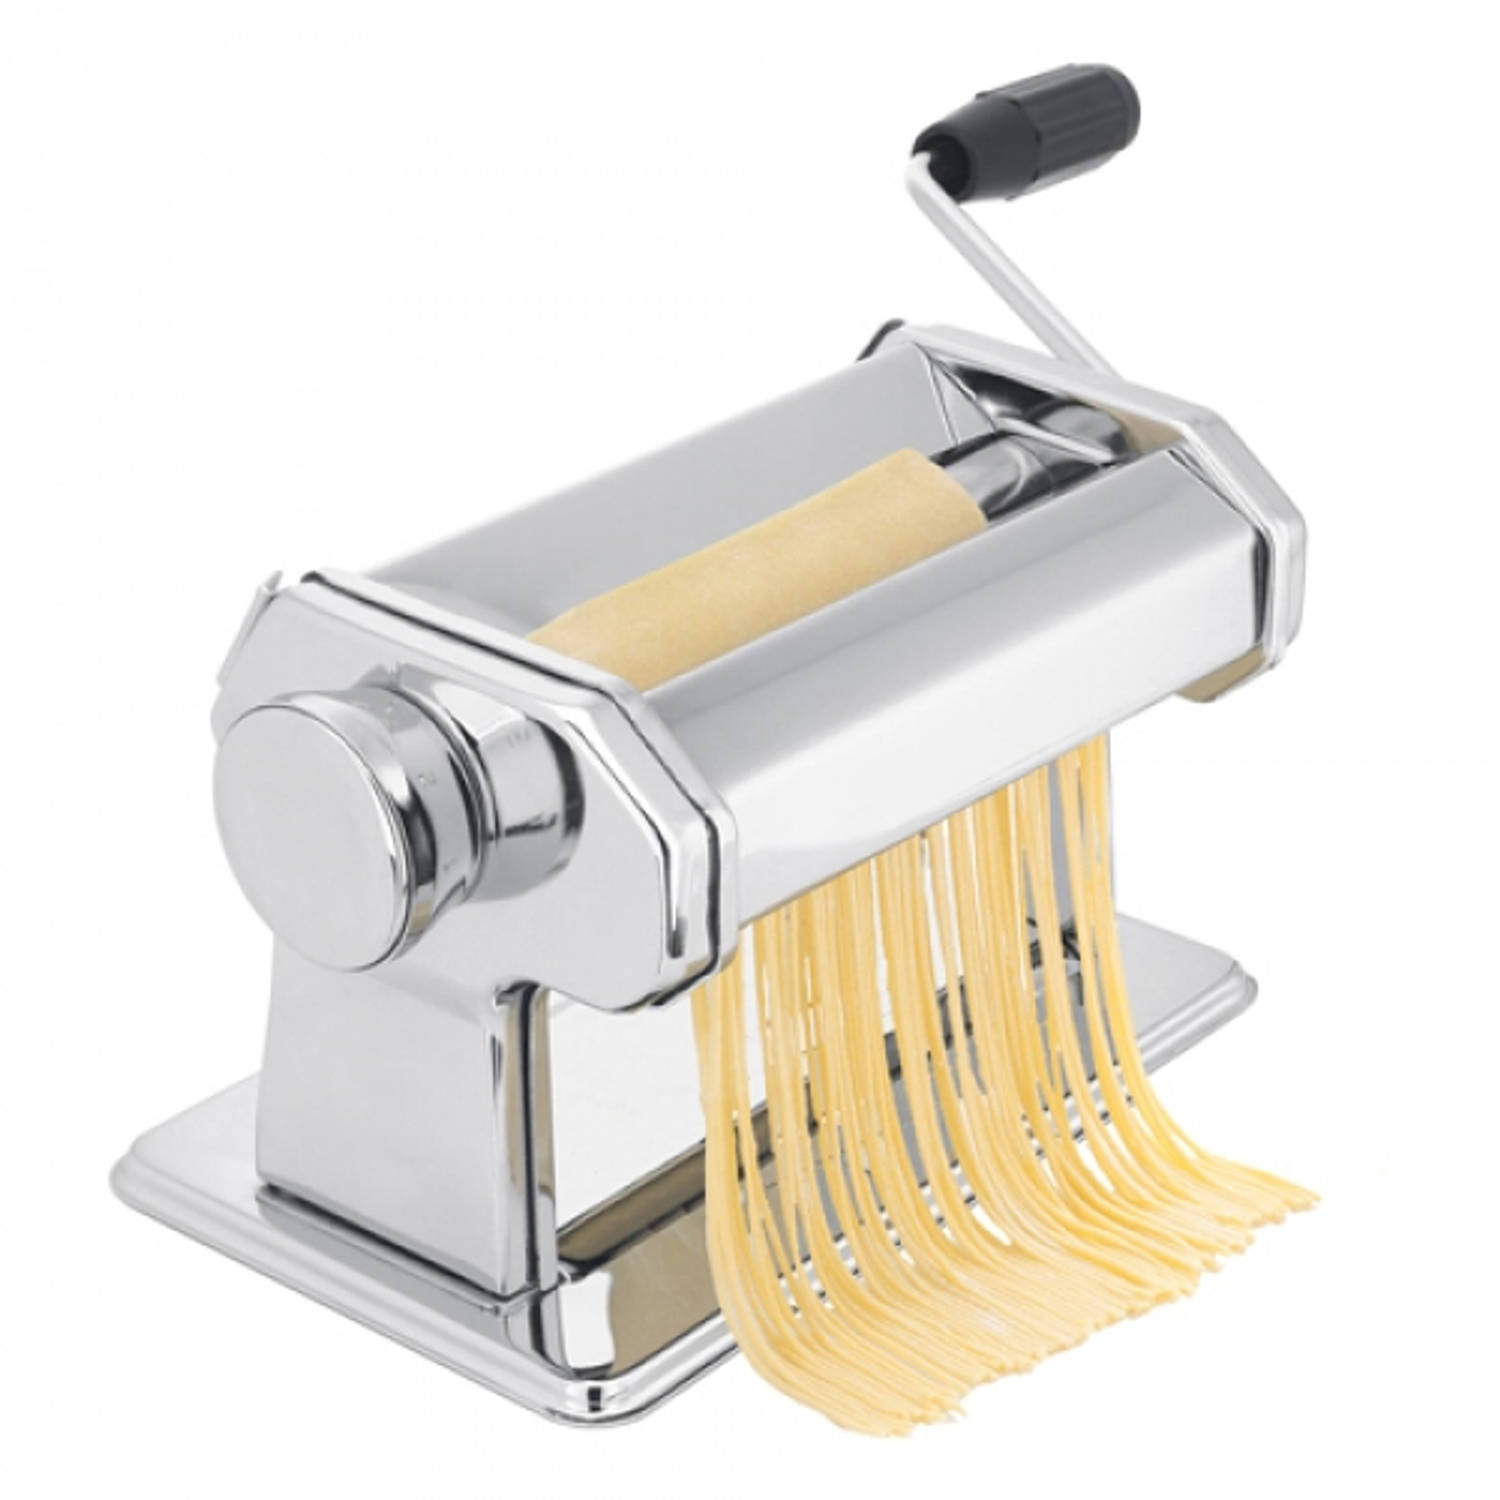 Arrangement Goed doen Onbemand Pasta Machine | Blokker